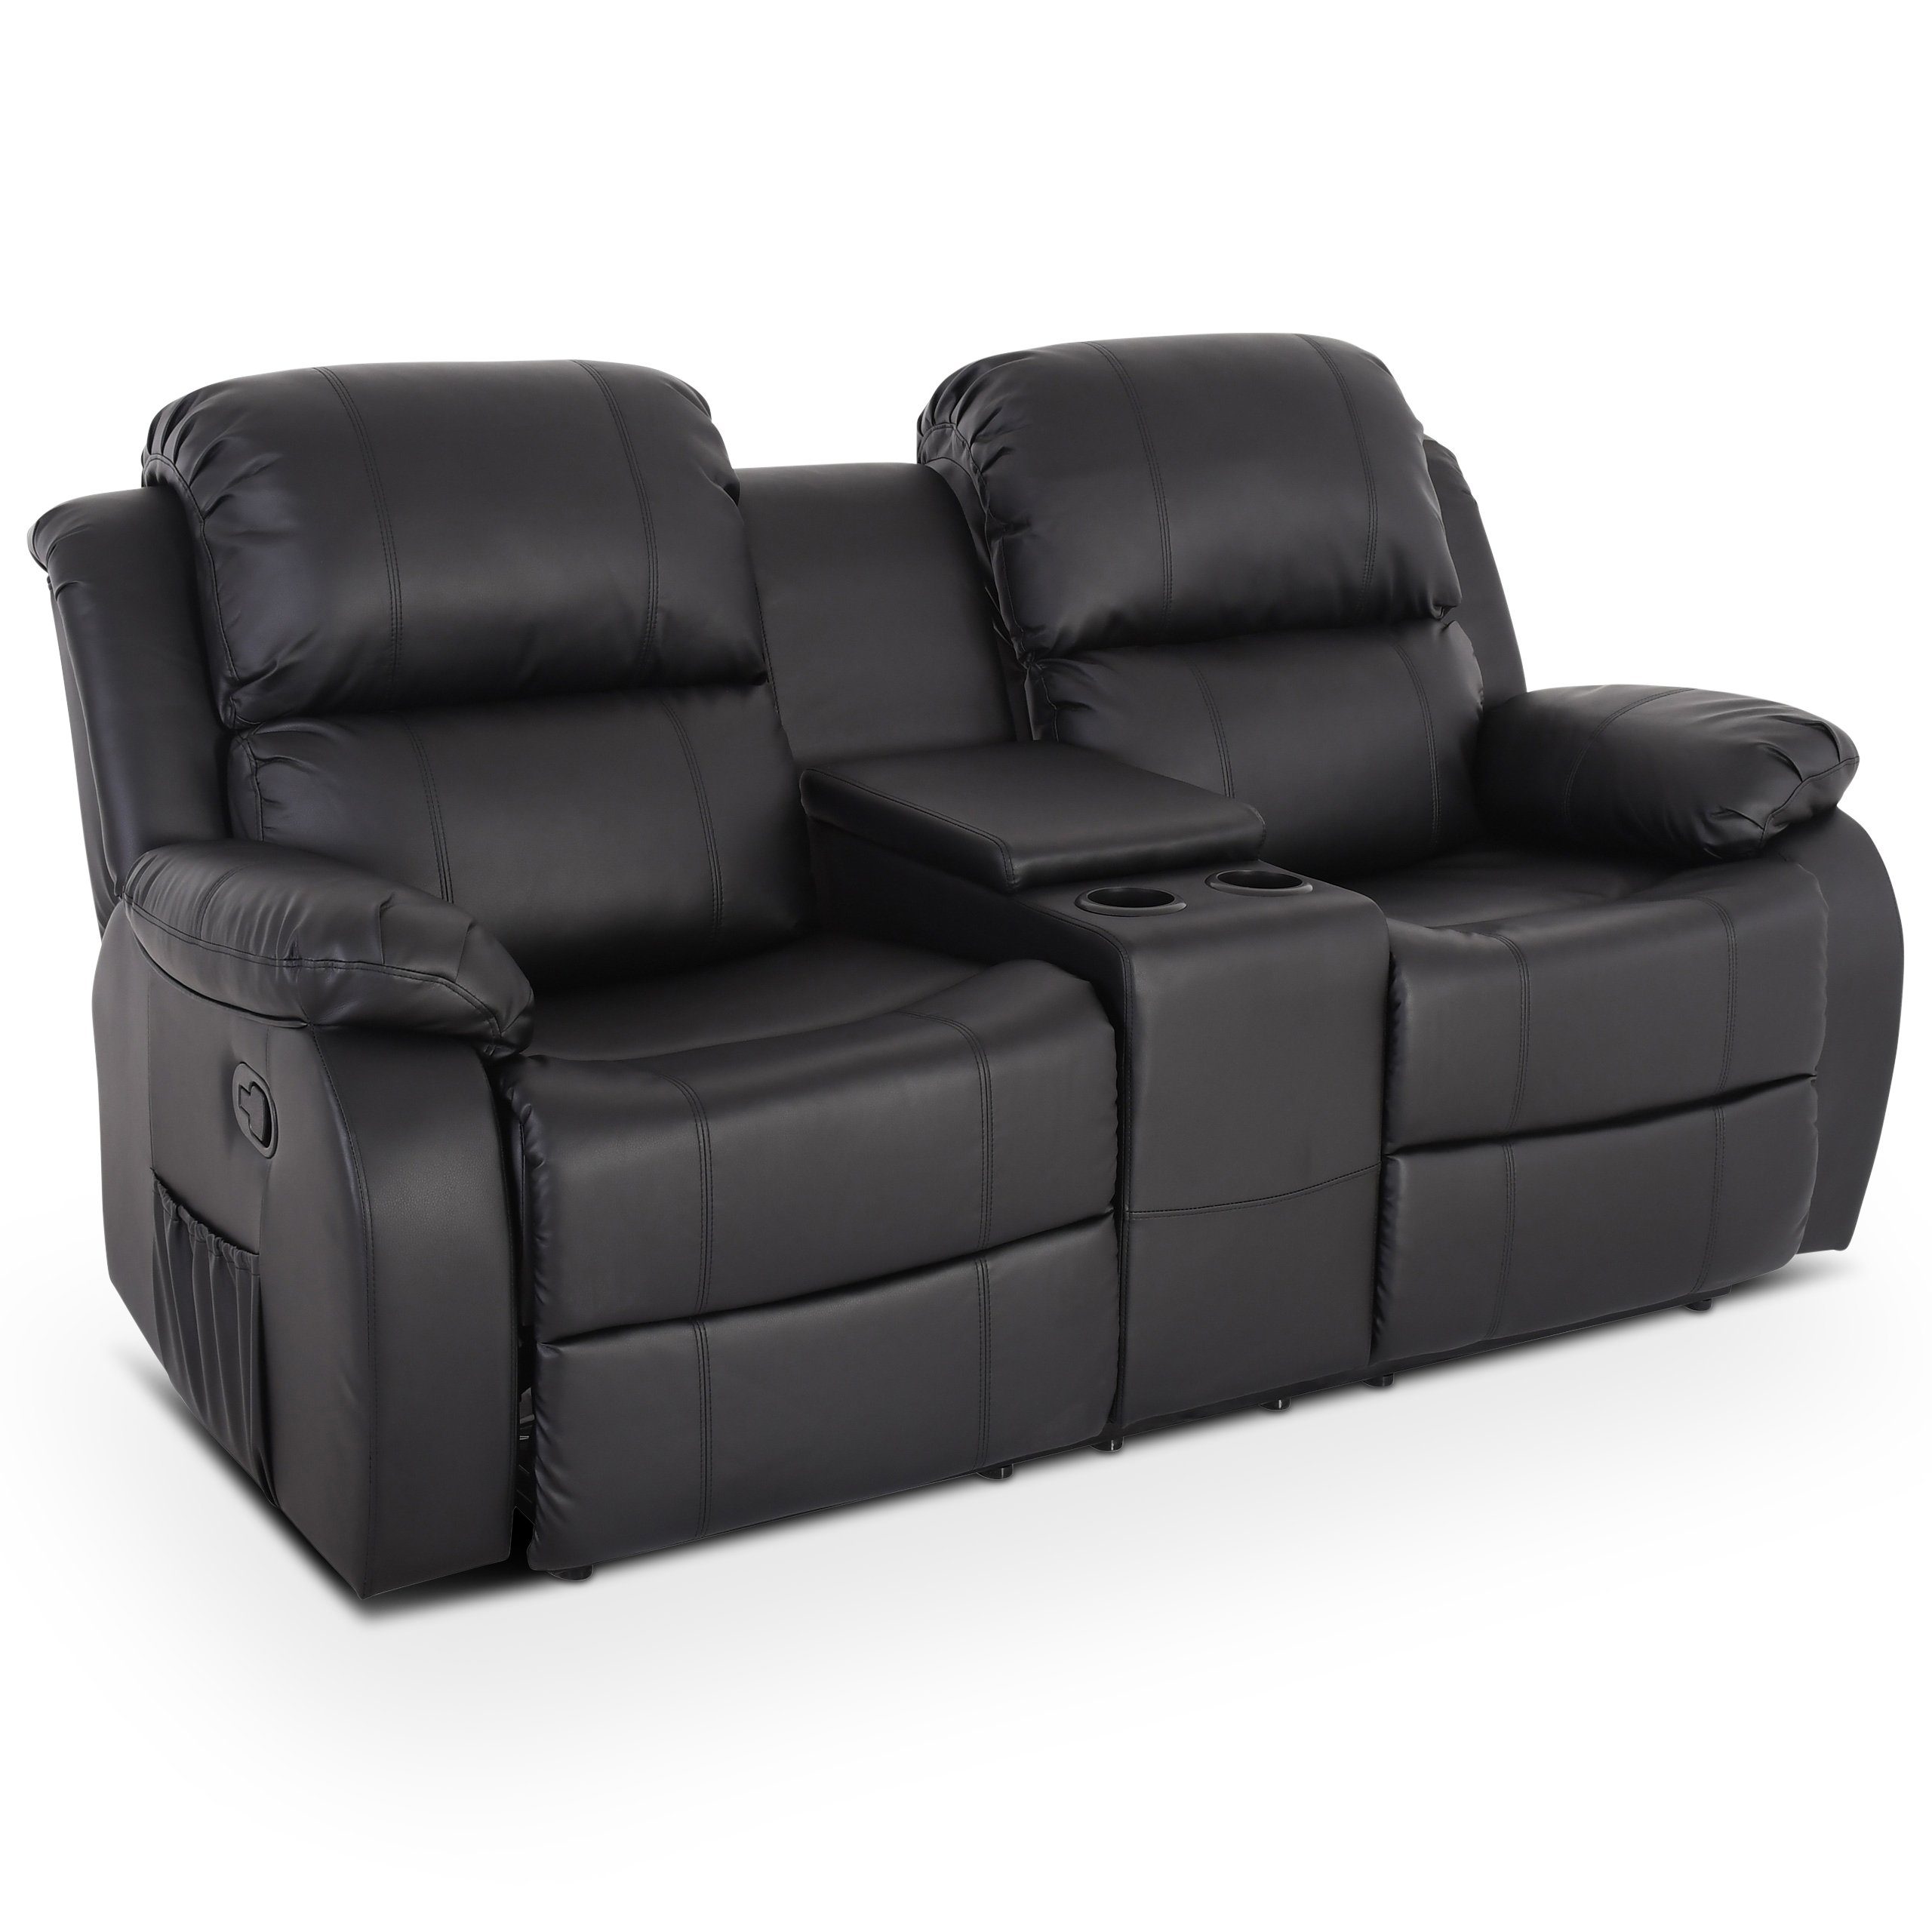 Comfort Möbel online kaufen | OTTO